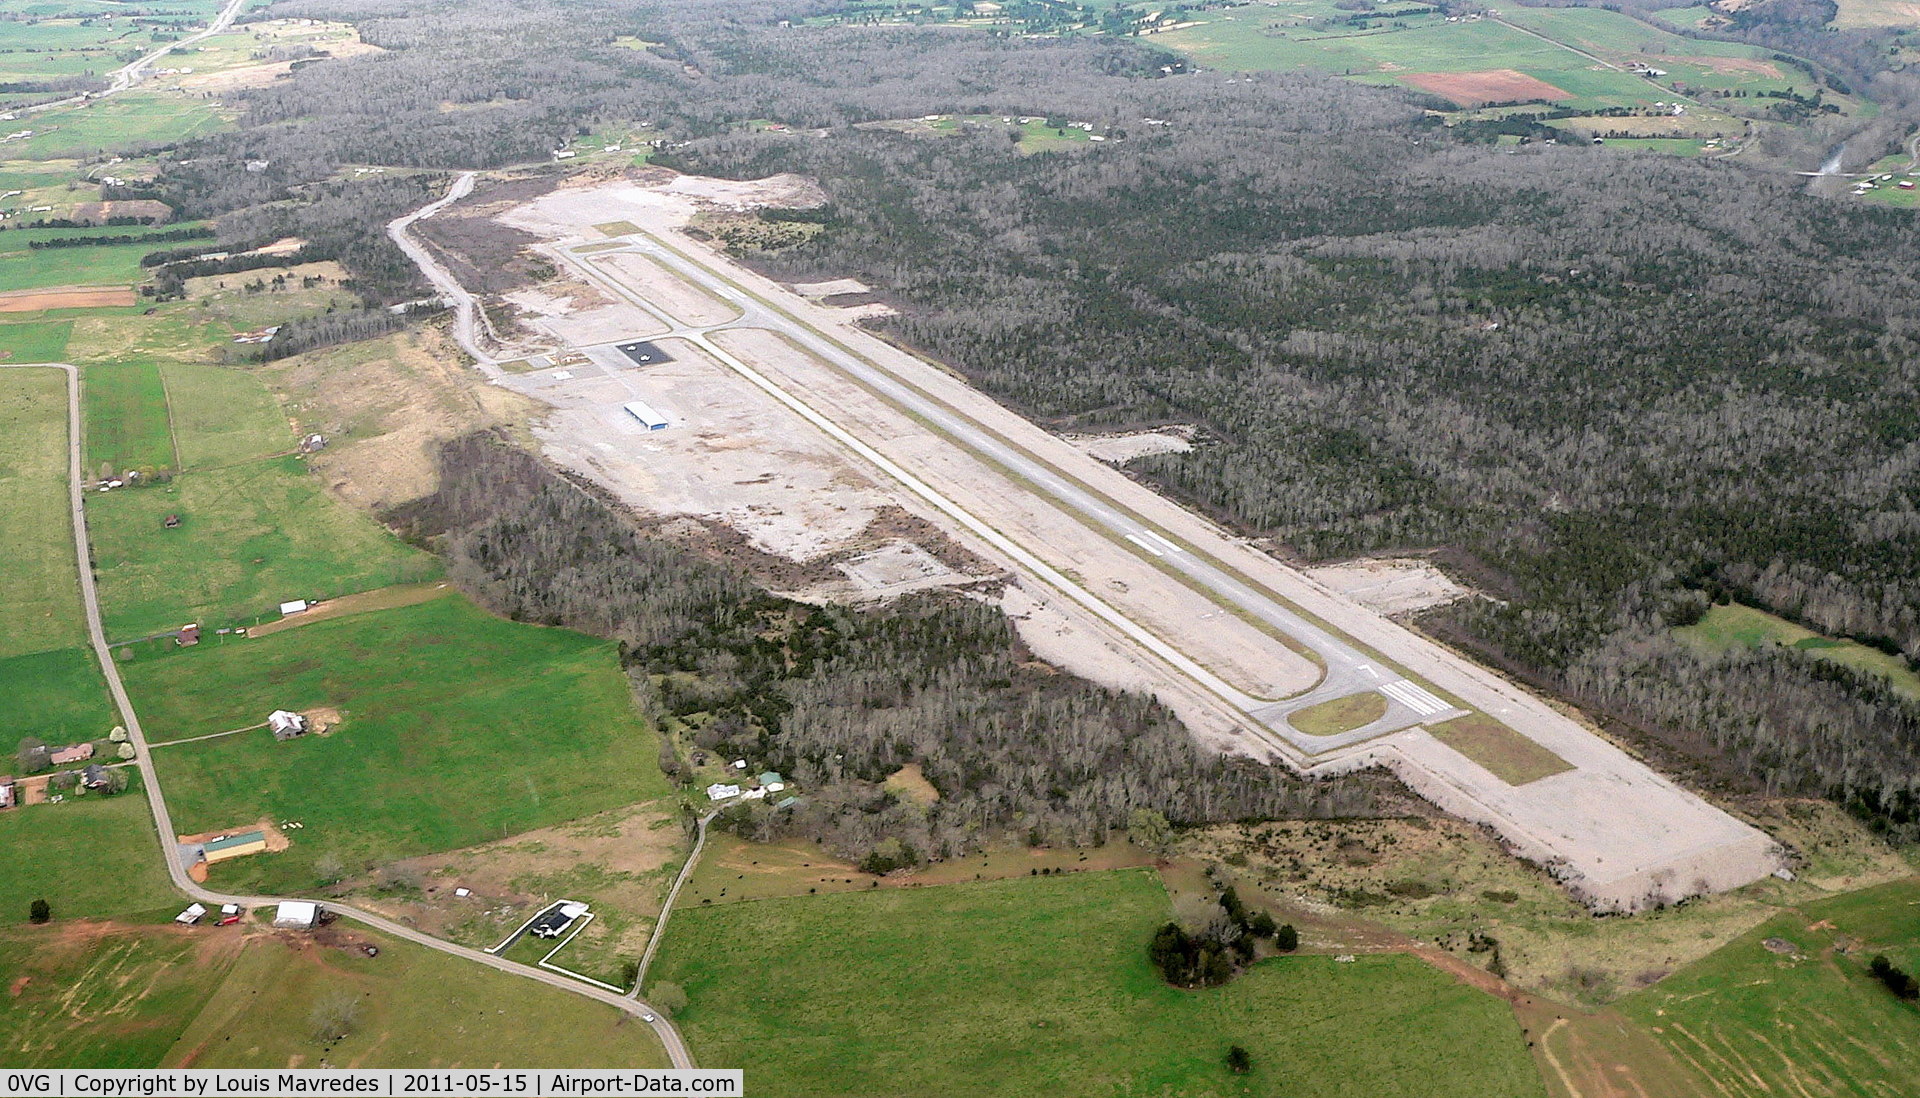 Lee County Airport (0VG) - Lee County/Jonesville, Va. Airport